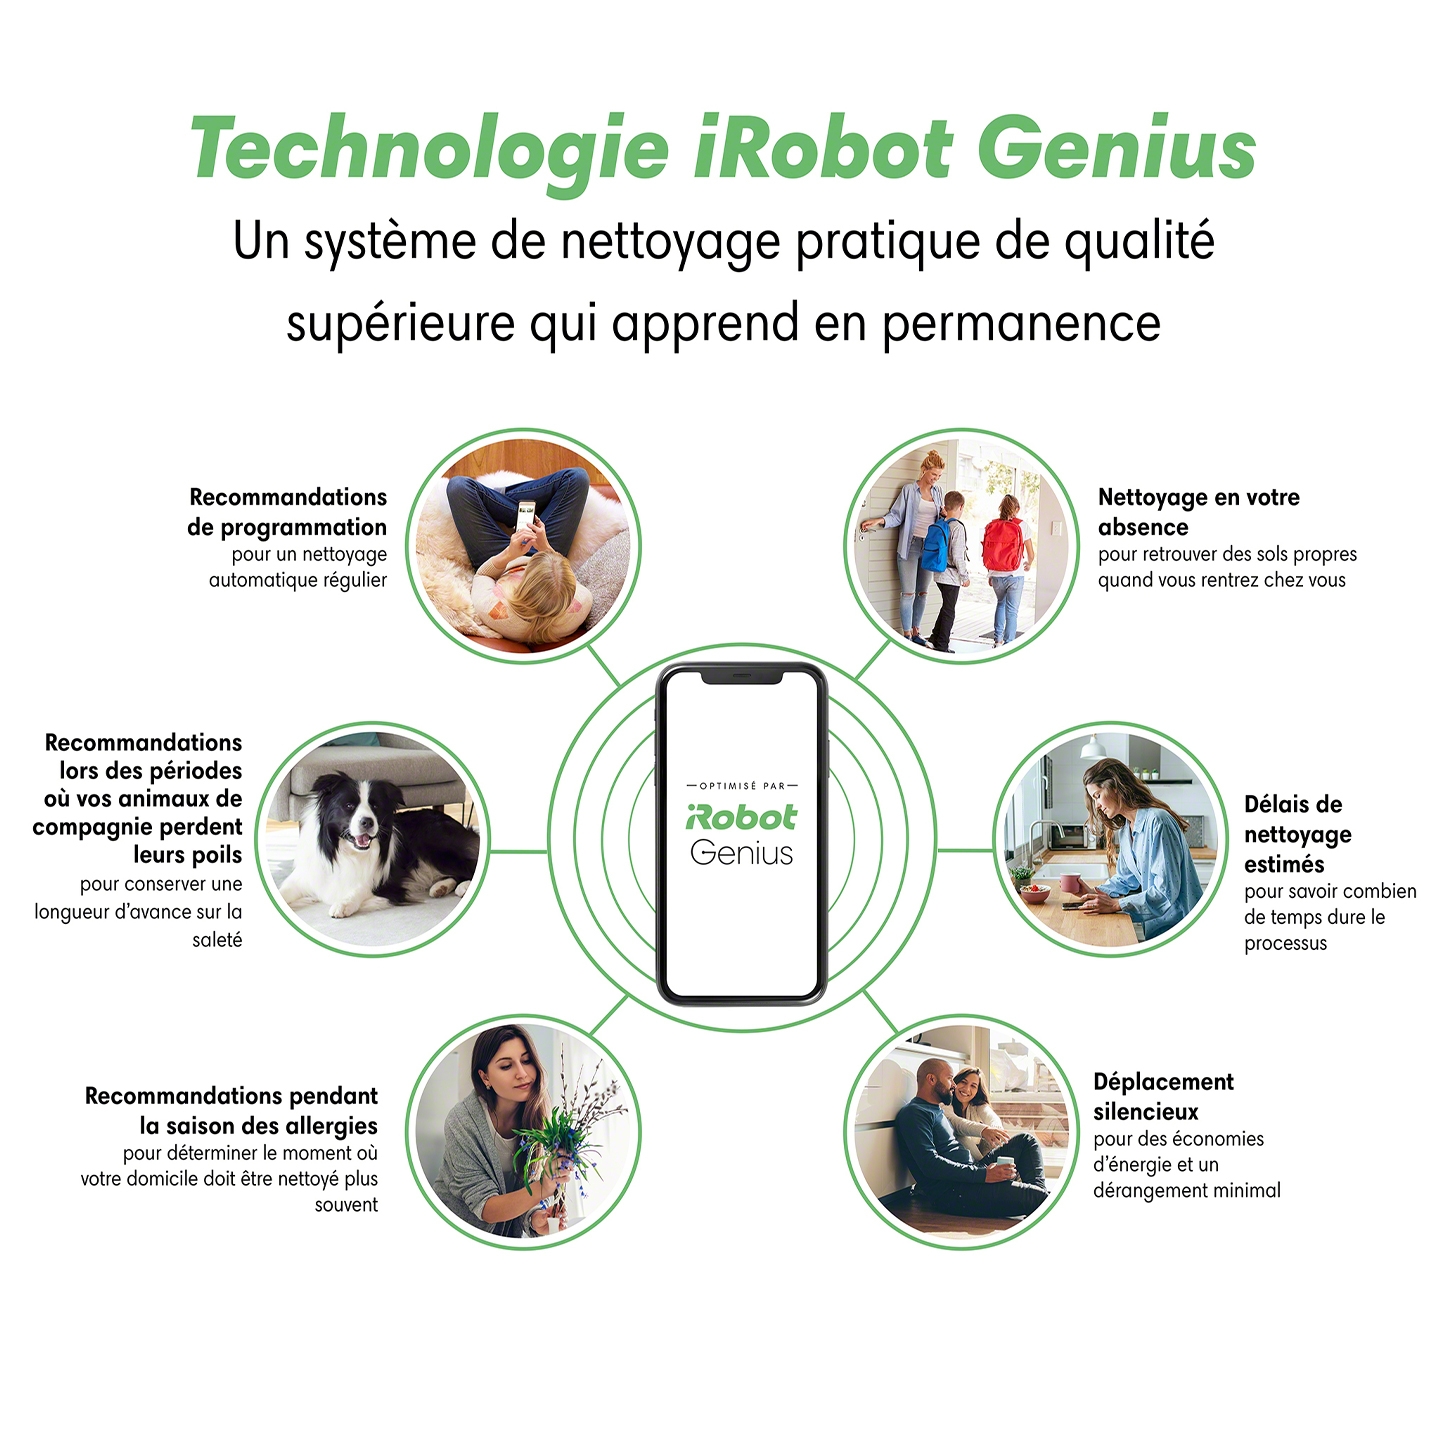 lp-2022-irobot-iRobot_Genius_Overview-fr.jpg